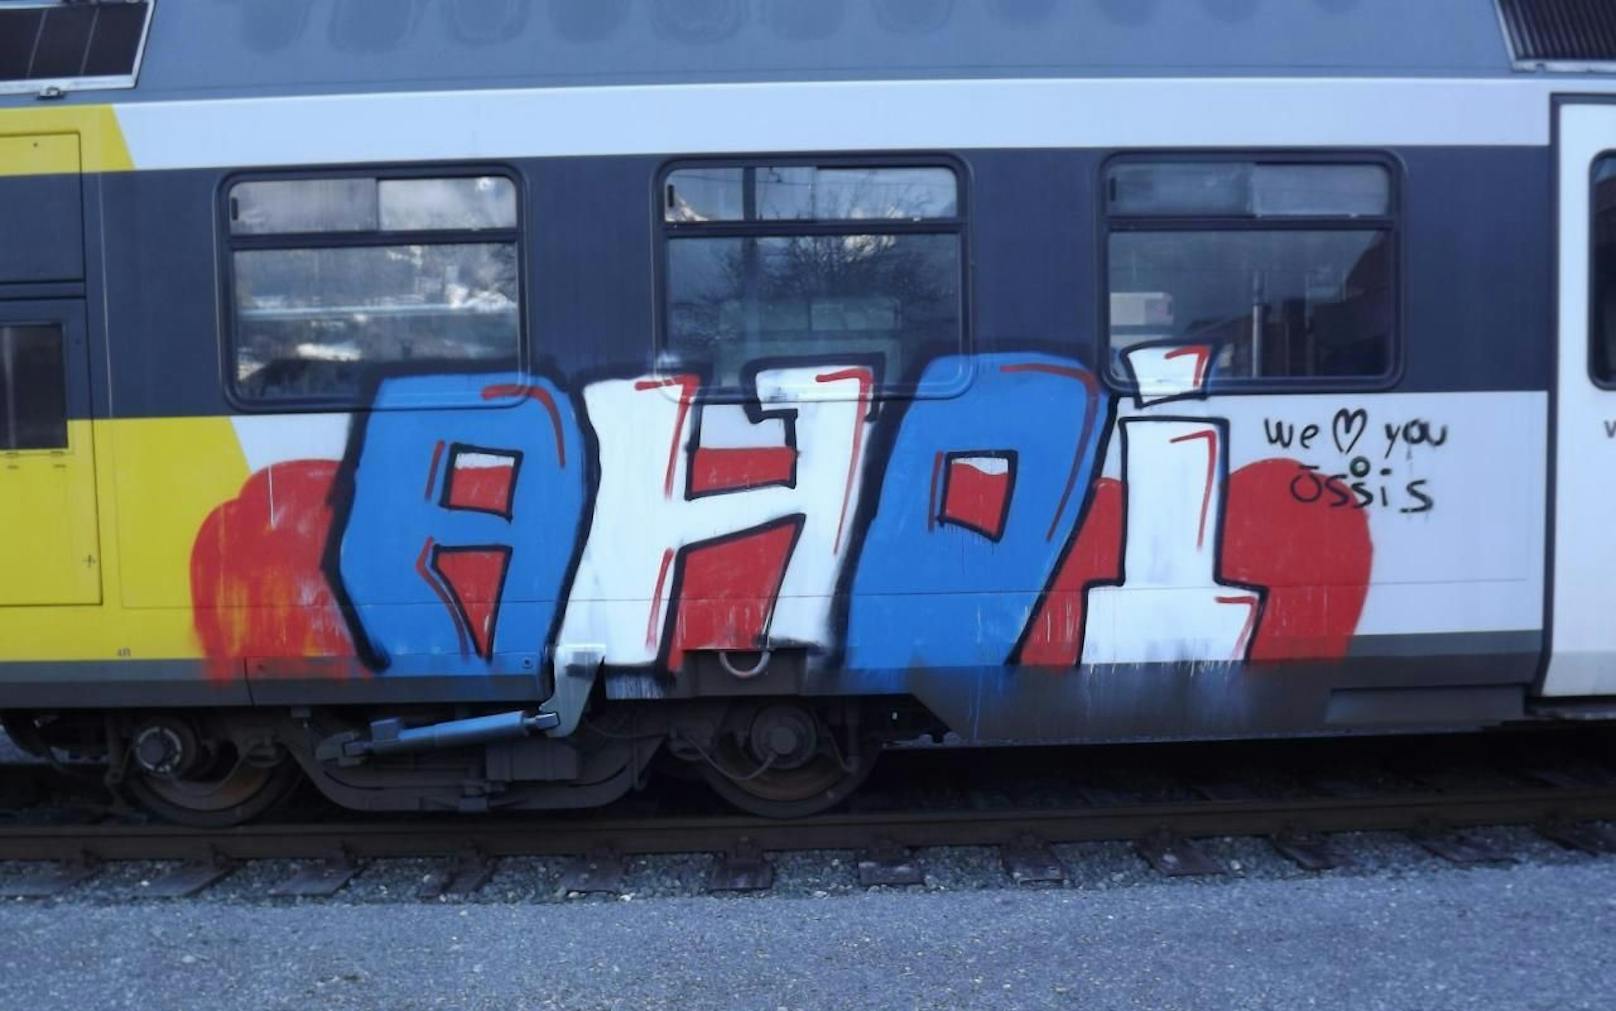 Immer wieder werden Züge mit Graffiti besprüht. (Symbolbild)